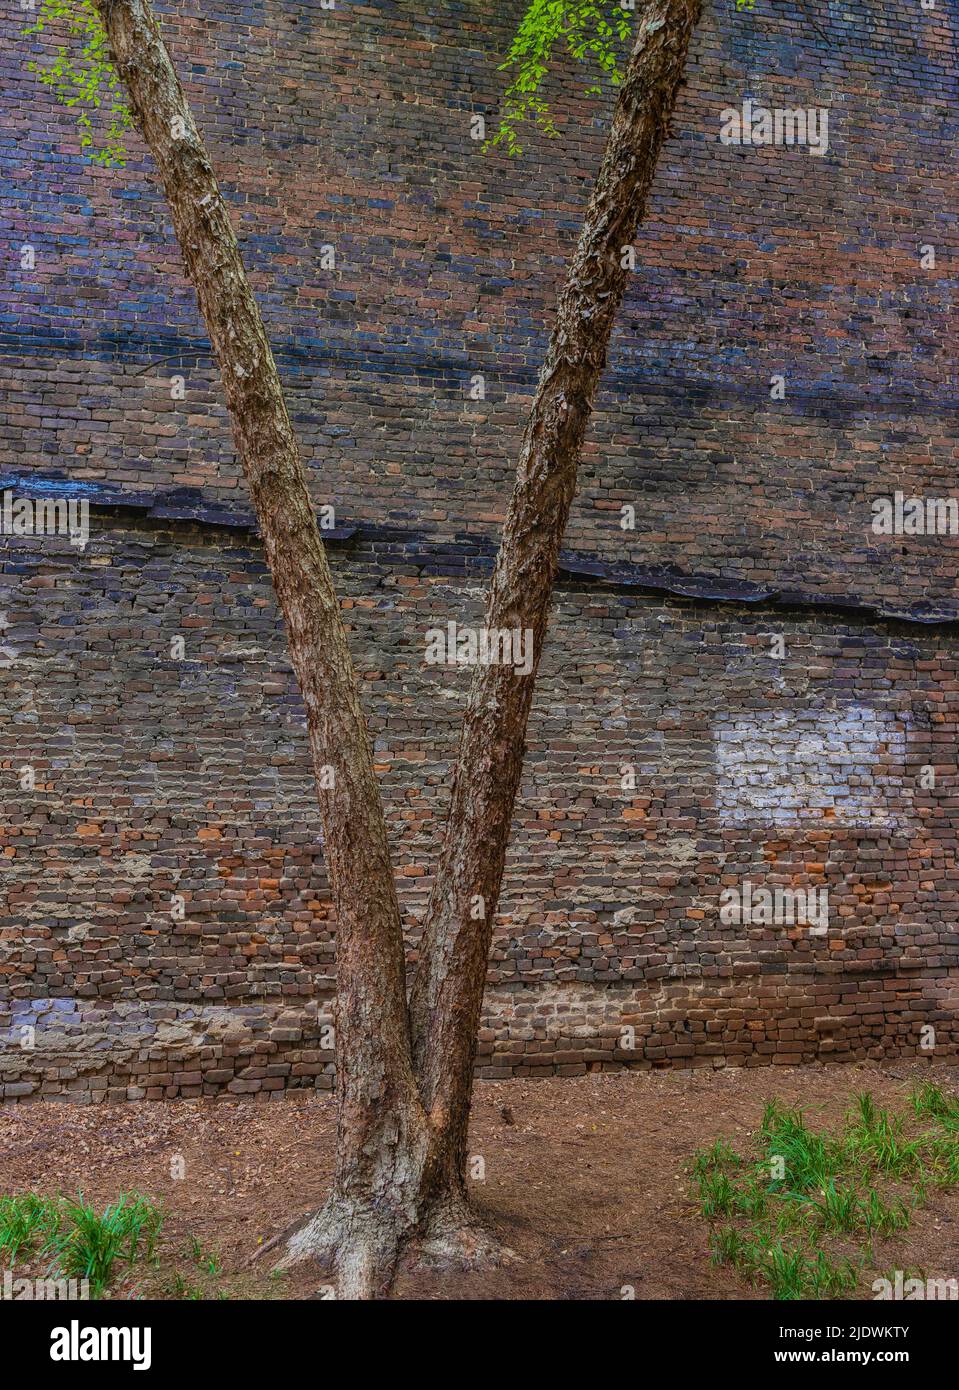 Hintergrund- und Kopierraum, der in diesem Bild von einer alten Backstein-Außenwand und einem Baumstamm in einer Ally-Weise zur Verfügung steht Stockfoto